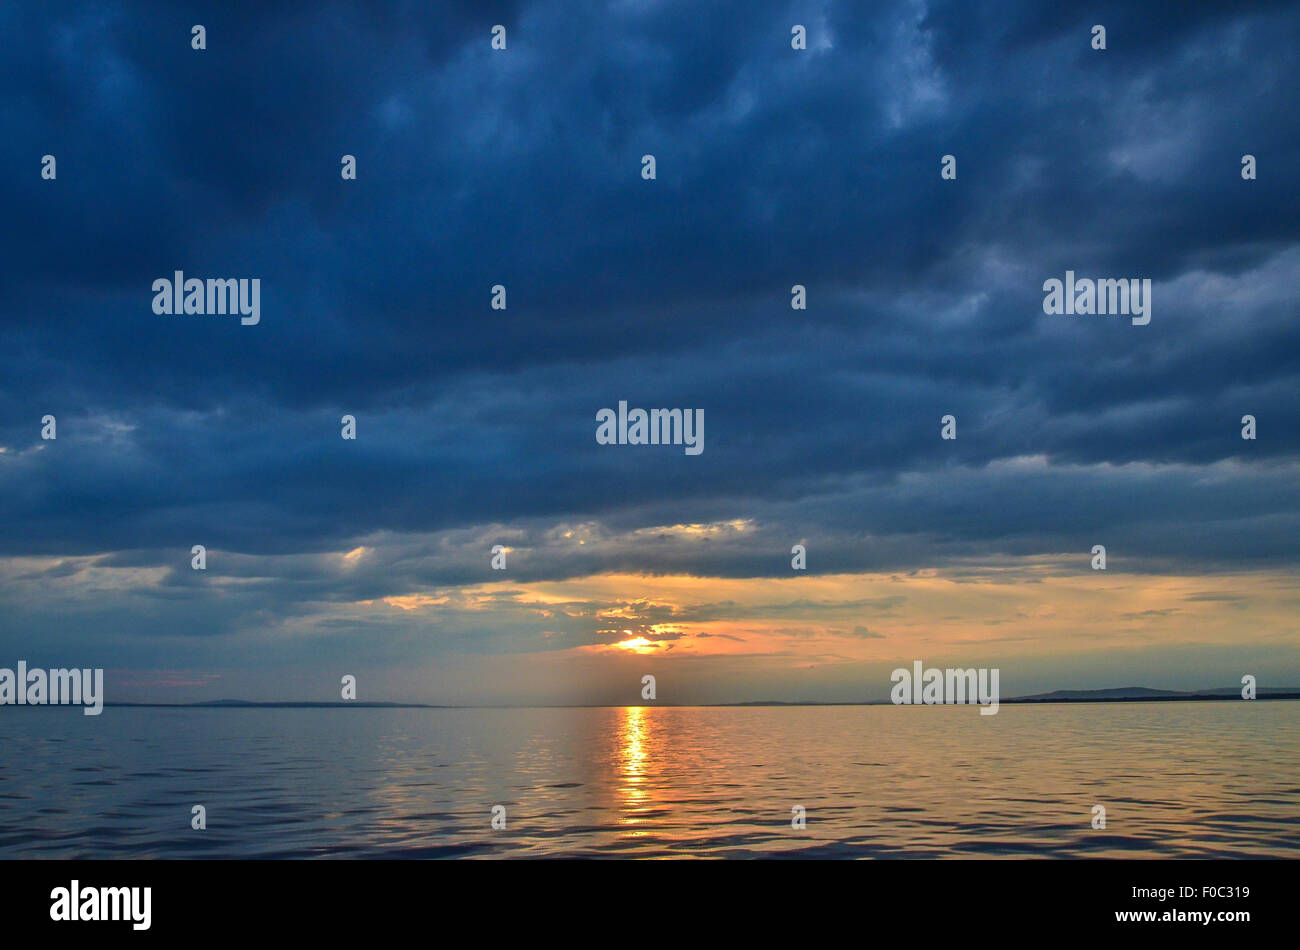 Una puesta de sol sobre el Lago de Constanza con la costa a lo lejos, las nubes oscuras y ondeando las olas Foto de stock